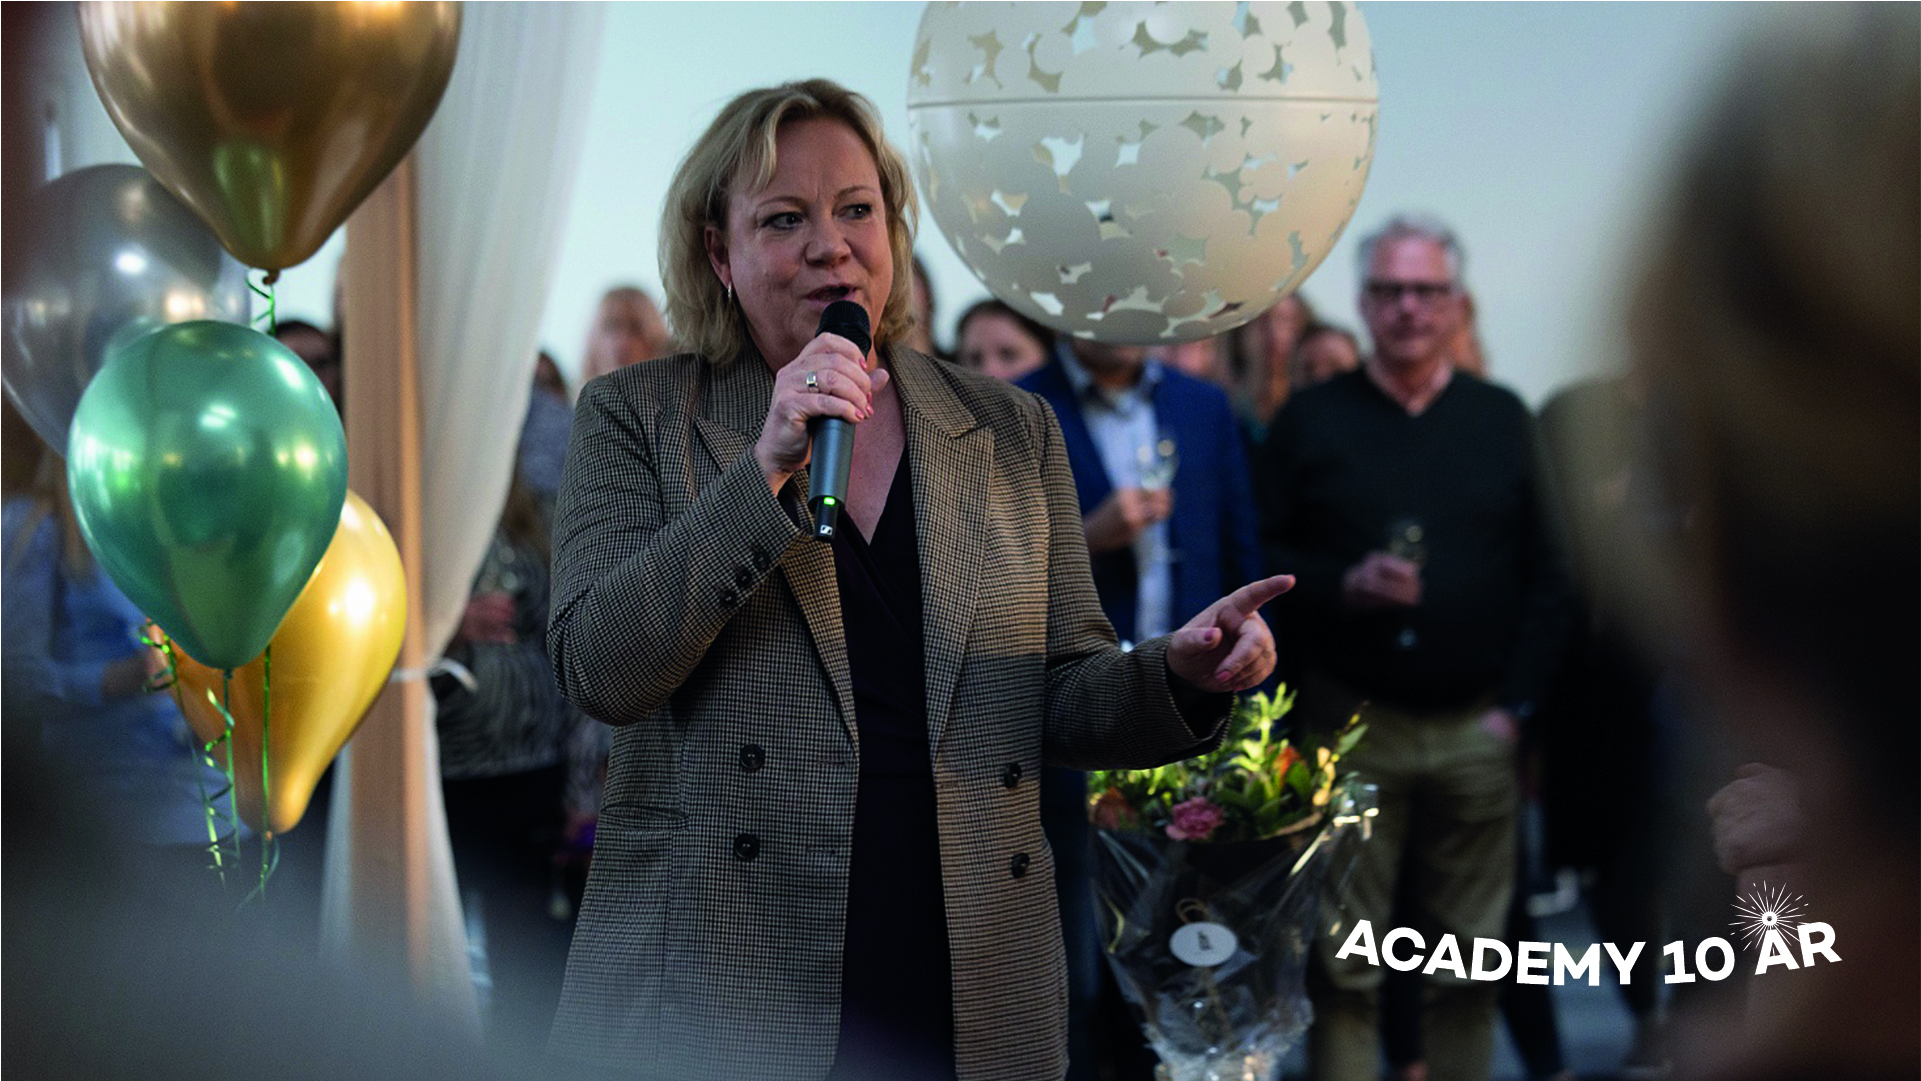 Lisa Oldmark står med en mikrofon i handen och håller ett tal. I bakgrunden syns människor och ballonger. På bilden står det Academy 10 år.